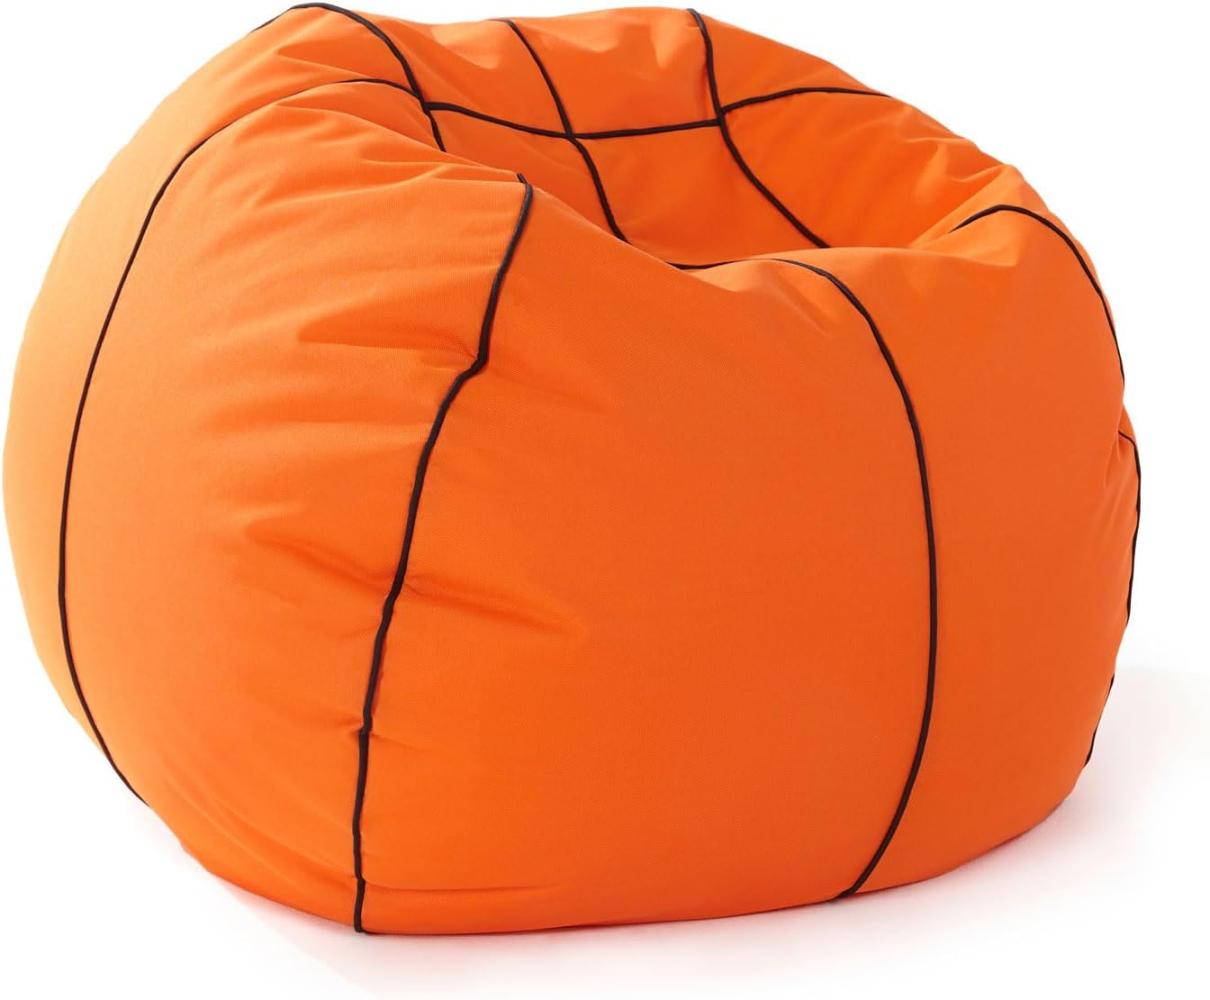 Lumaland Basketball-Sitzsack (110 cm Ø): Der Dunking fürs Sitzgefühl | So geht stilechtes Mitfiebern sowohl Indoor & Outdoor I Mit über 2,5 Mio. anpassungsfähigen EPS-Perlen | Waschbarer Bezug Bild 1